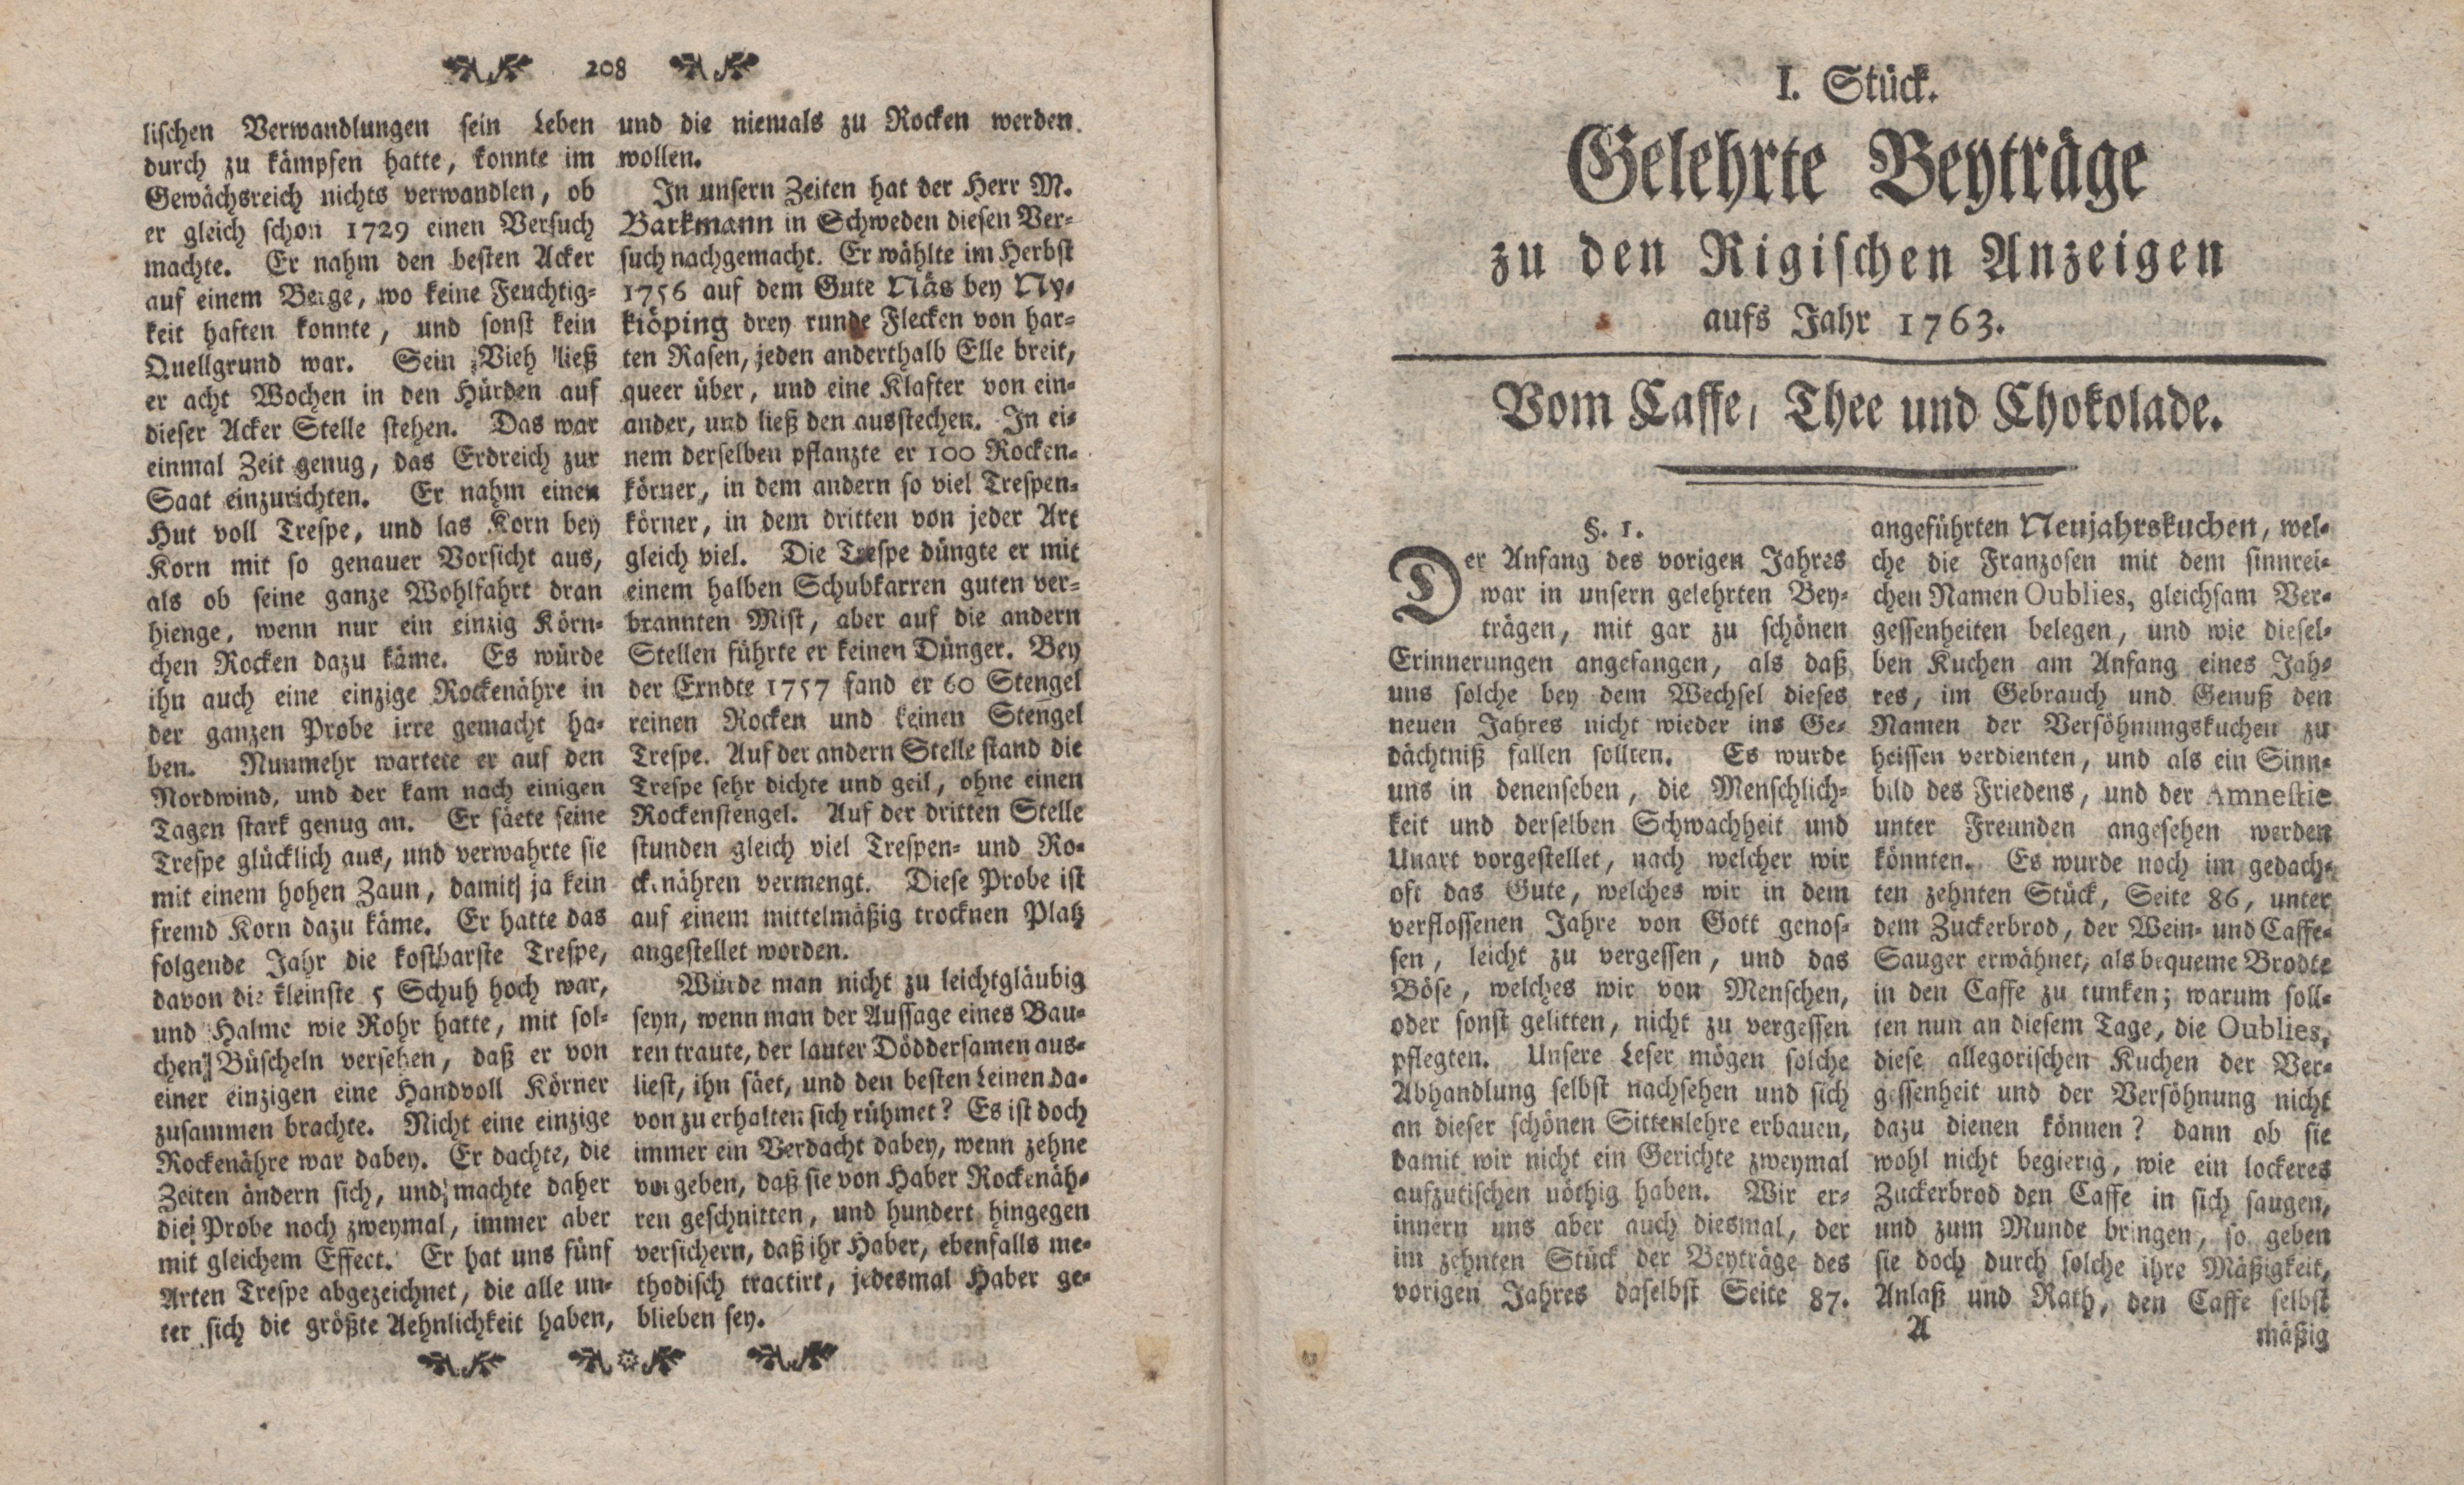 Gelehrte Beyträge zu den Rigischen Anzeigen 1763 (1763) | 1. (1) Titelblatt